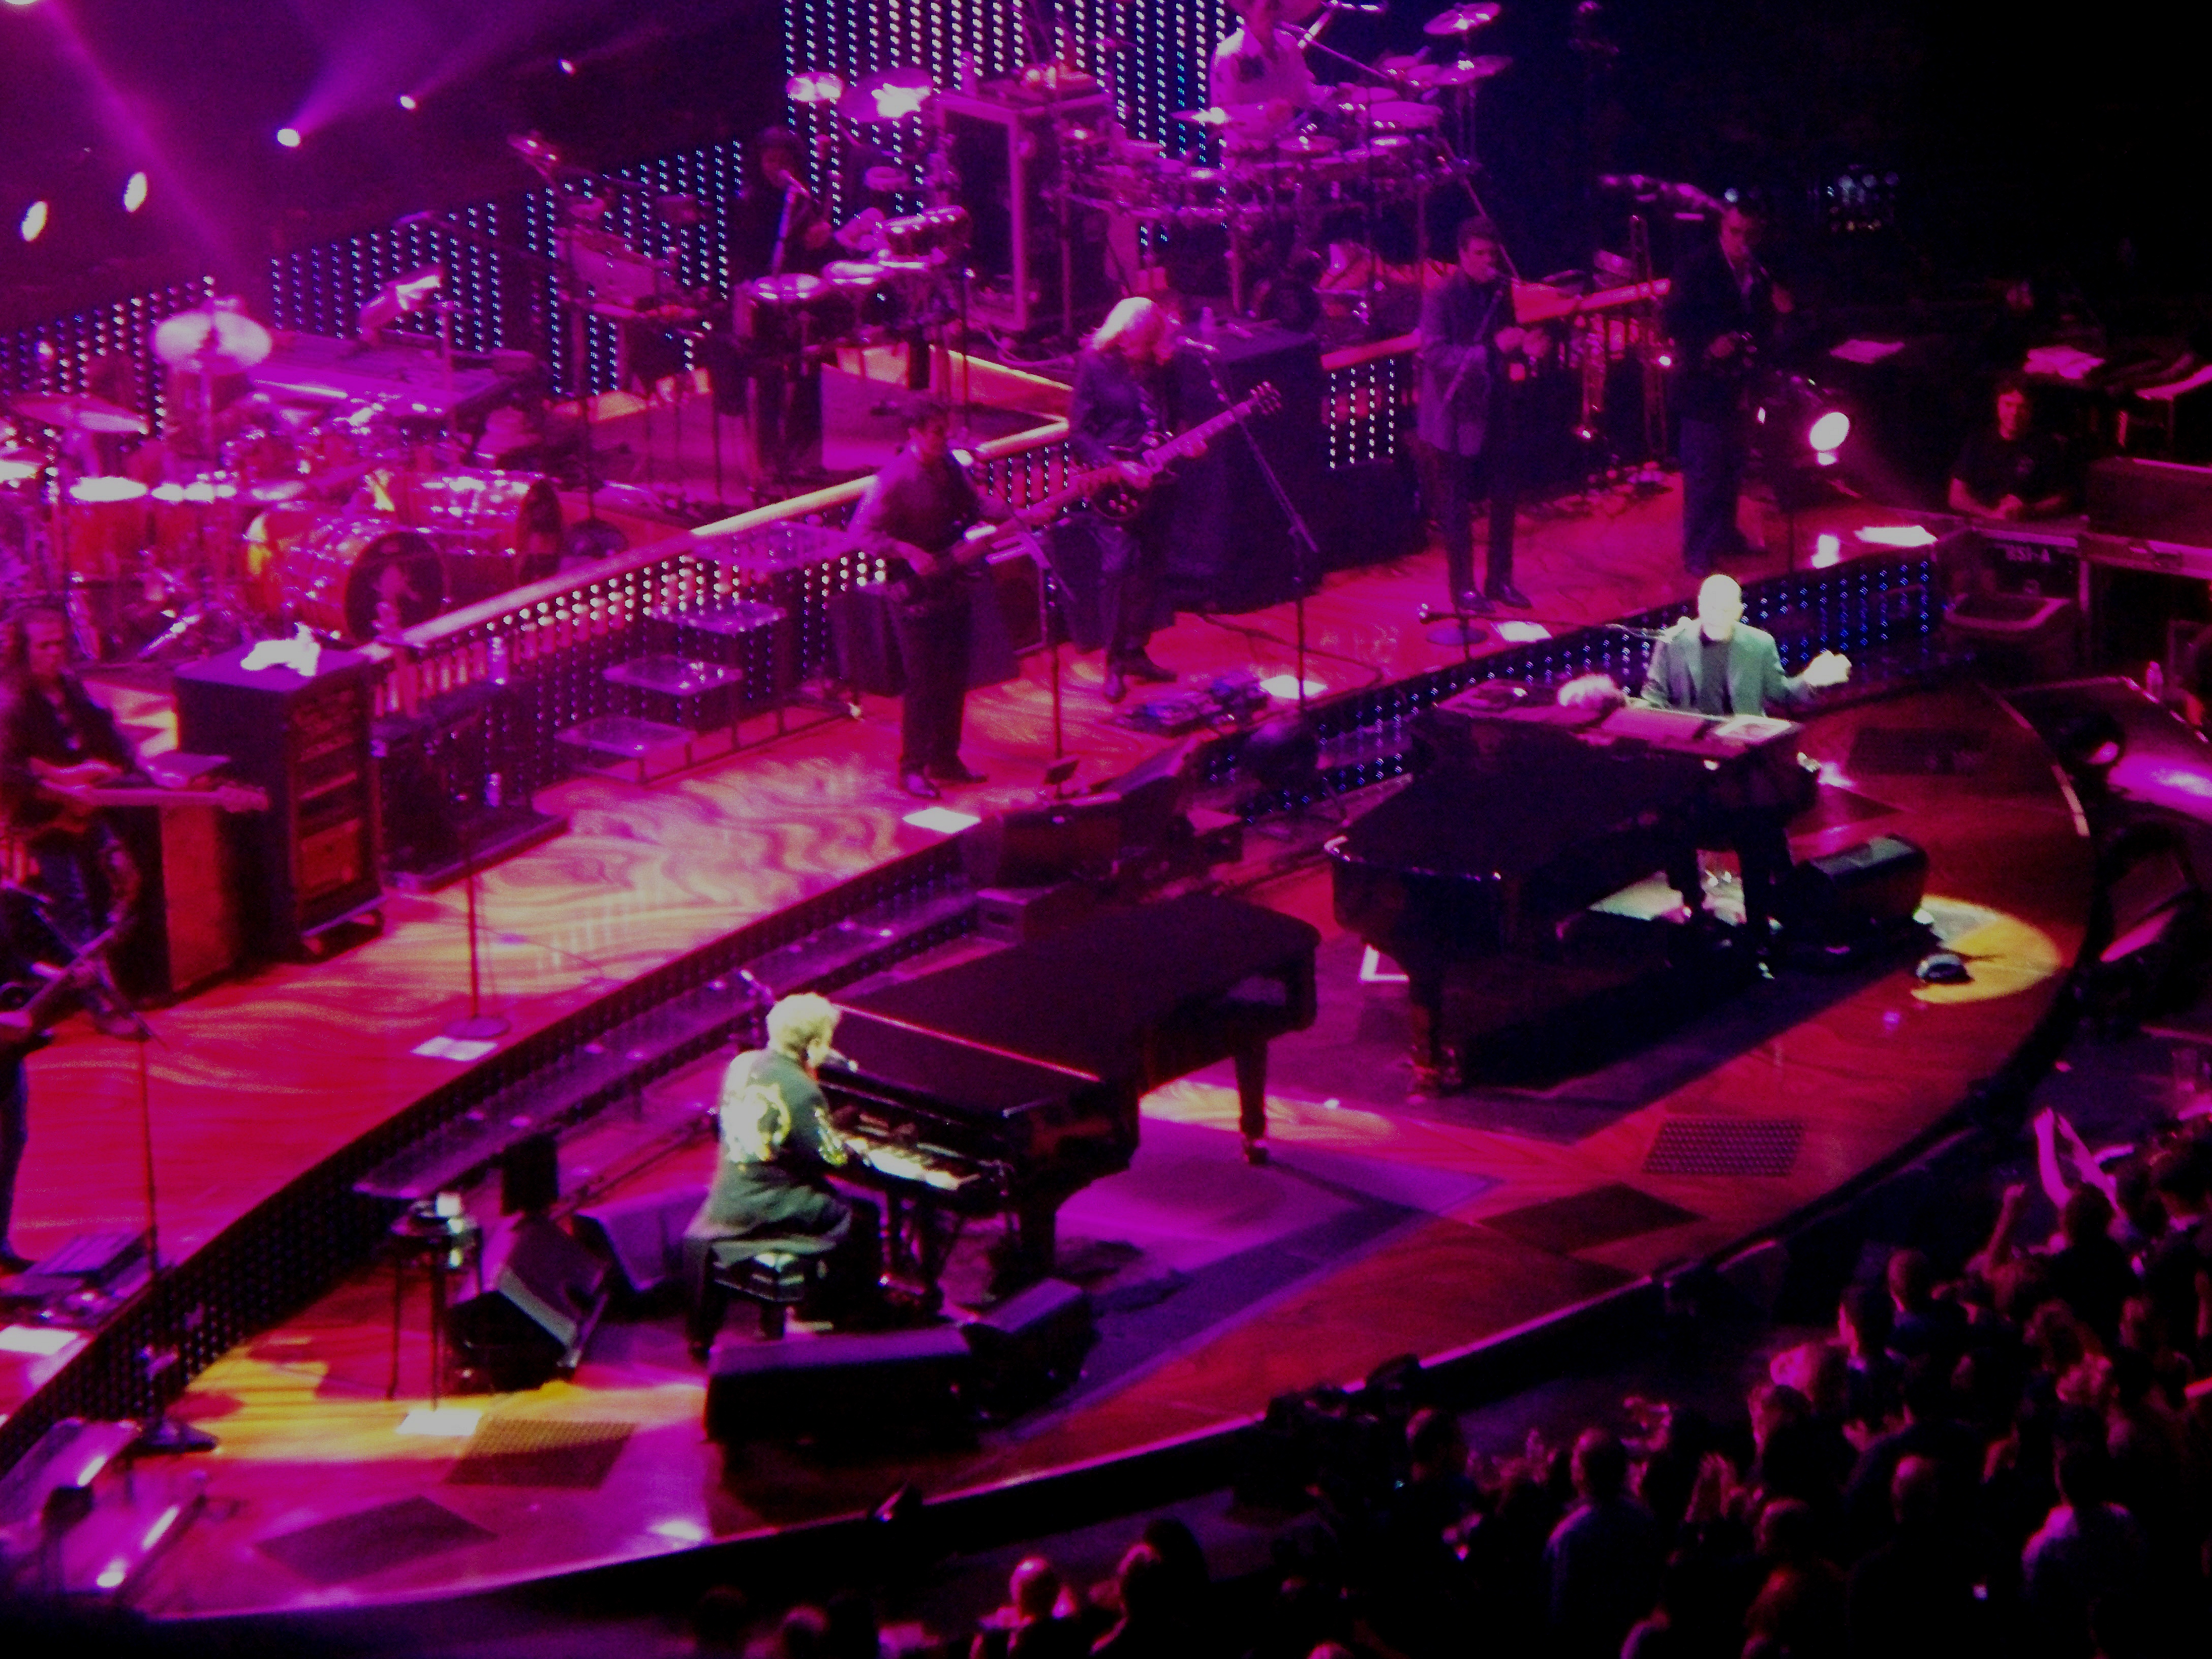 Elton John and Billy Joel